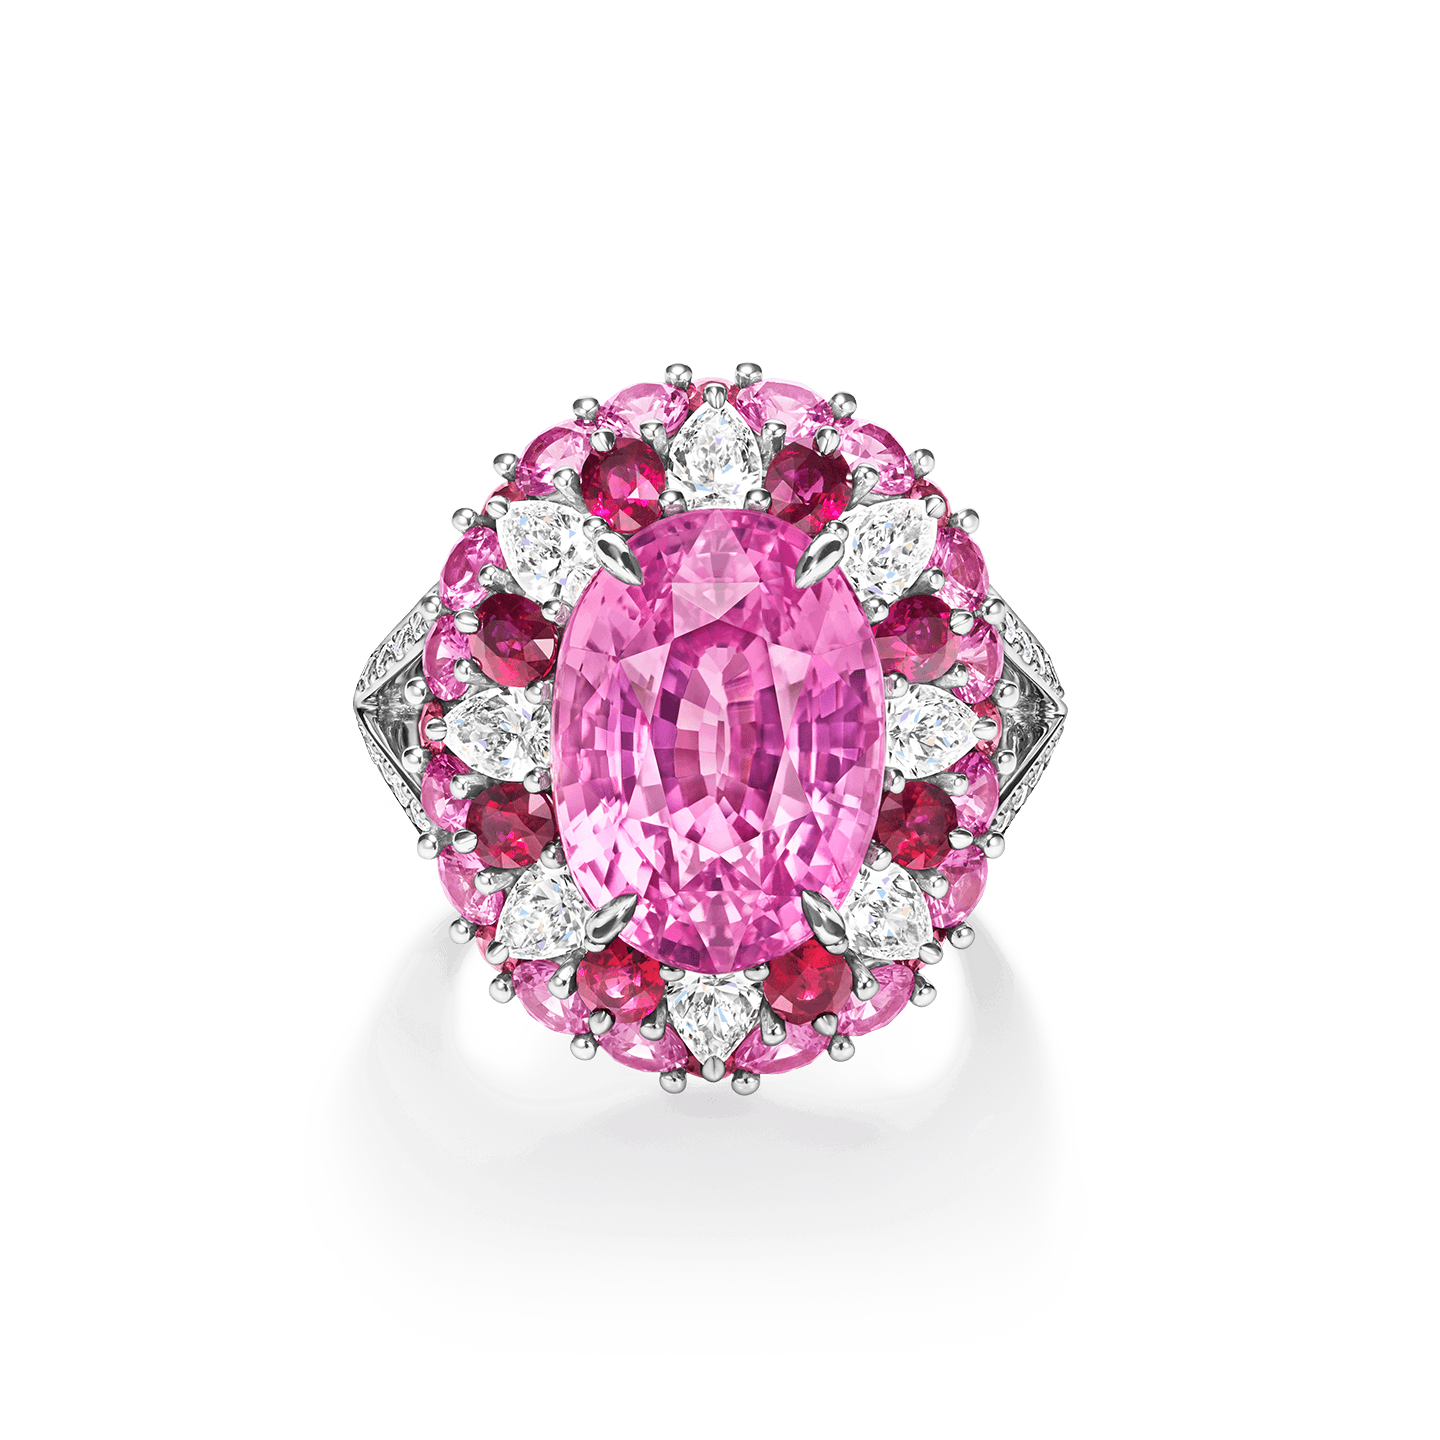 Winston Candy粉紅剛玉戒指，搭配紅寶石和鑽石